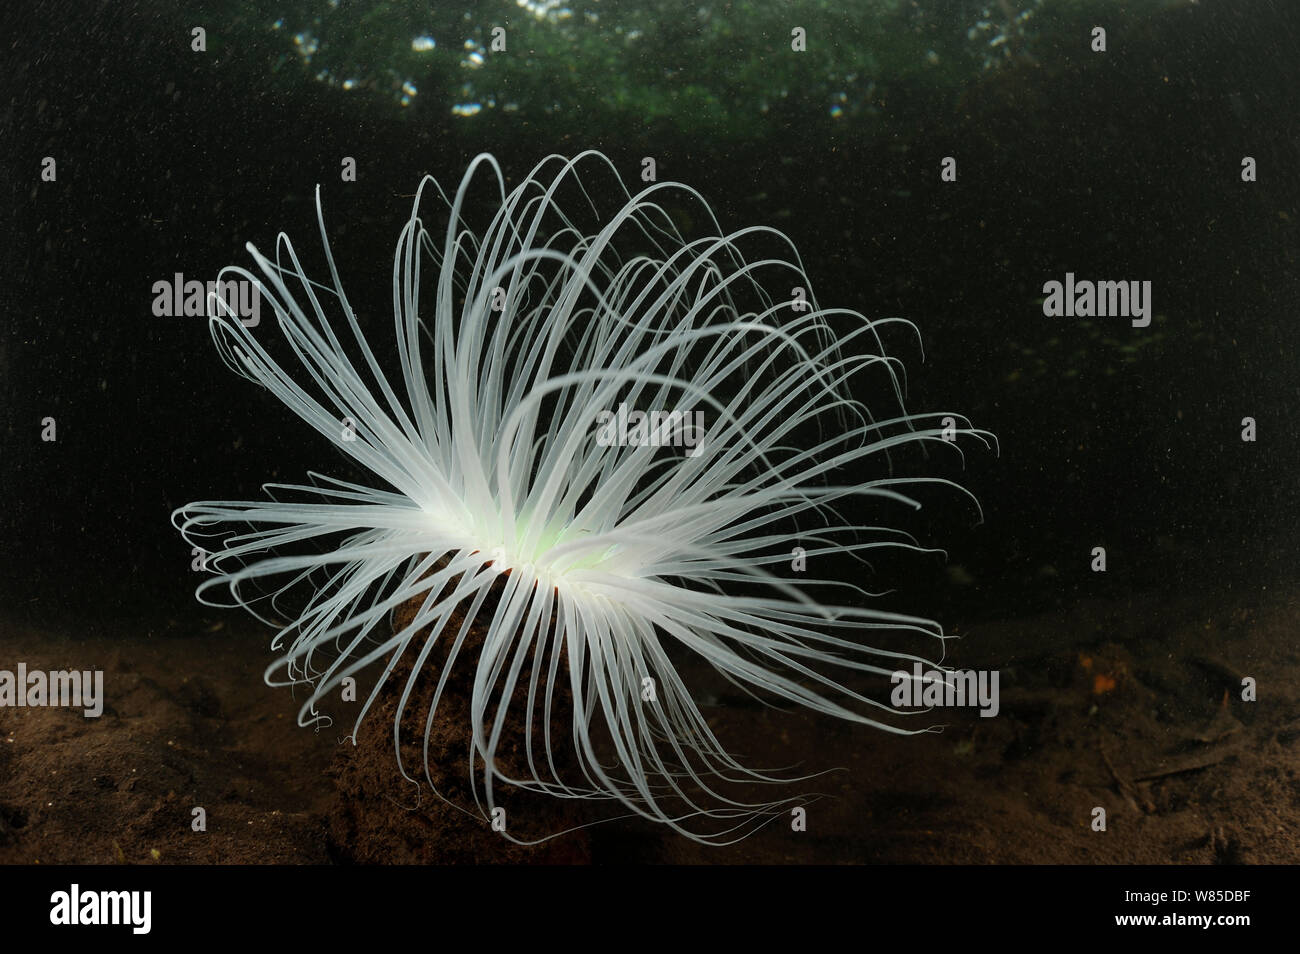 Tube anemone (Cerianthus filiformis) Raja Ampat, West Papua, Indonesia, Pacific Ocean. Stock Photo